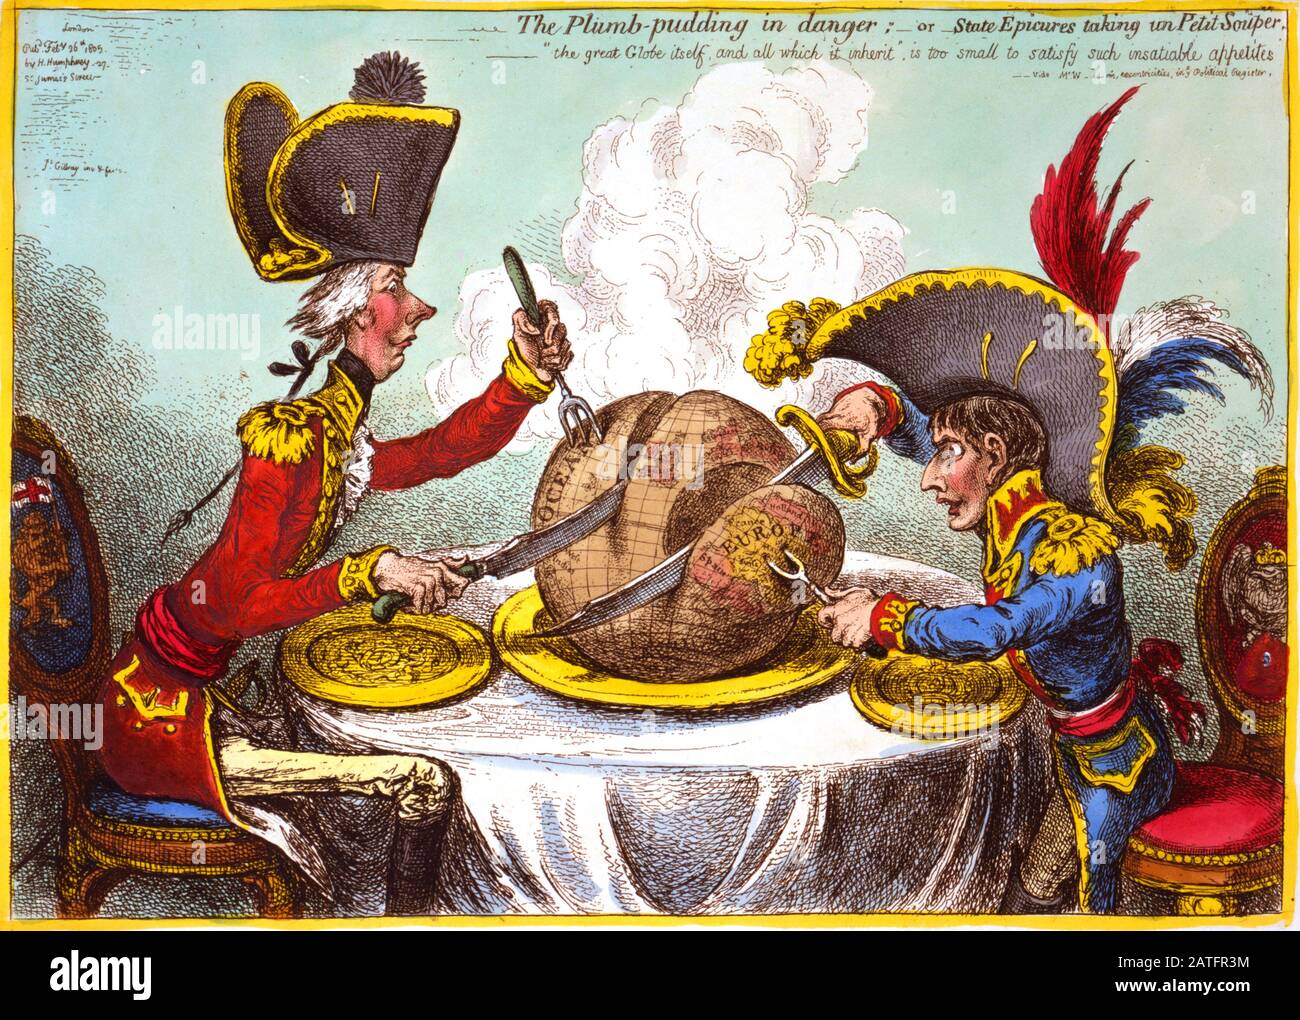 William Pitt et Napoléon sont représentés dans une bande dessinée satirique. Le boudin en péril (1805). Par James Gillray. Le monde est sculpté dans des sphères d'influence entre Pitt et Napoléon. Banque D'Images